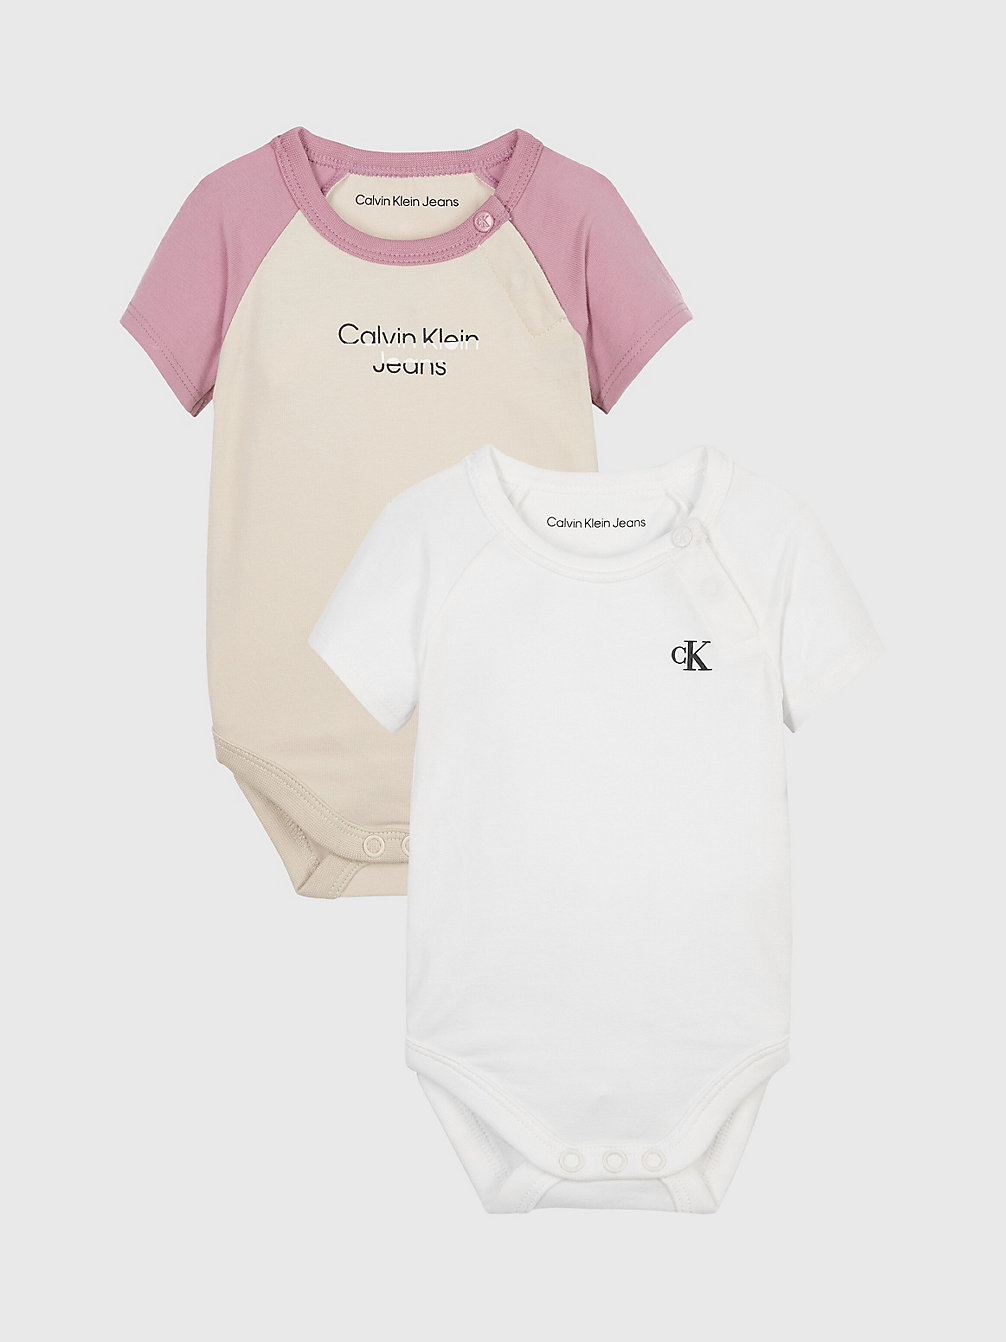 BRIGHT WHITE / CLASSIC BEIGE > 2-Pack Newborn-Bodysuit Set > undefined newborn - Calvin Klein